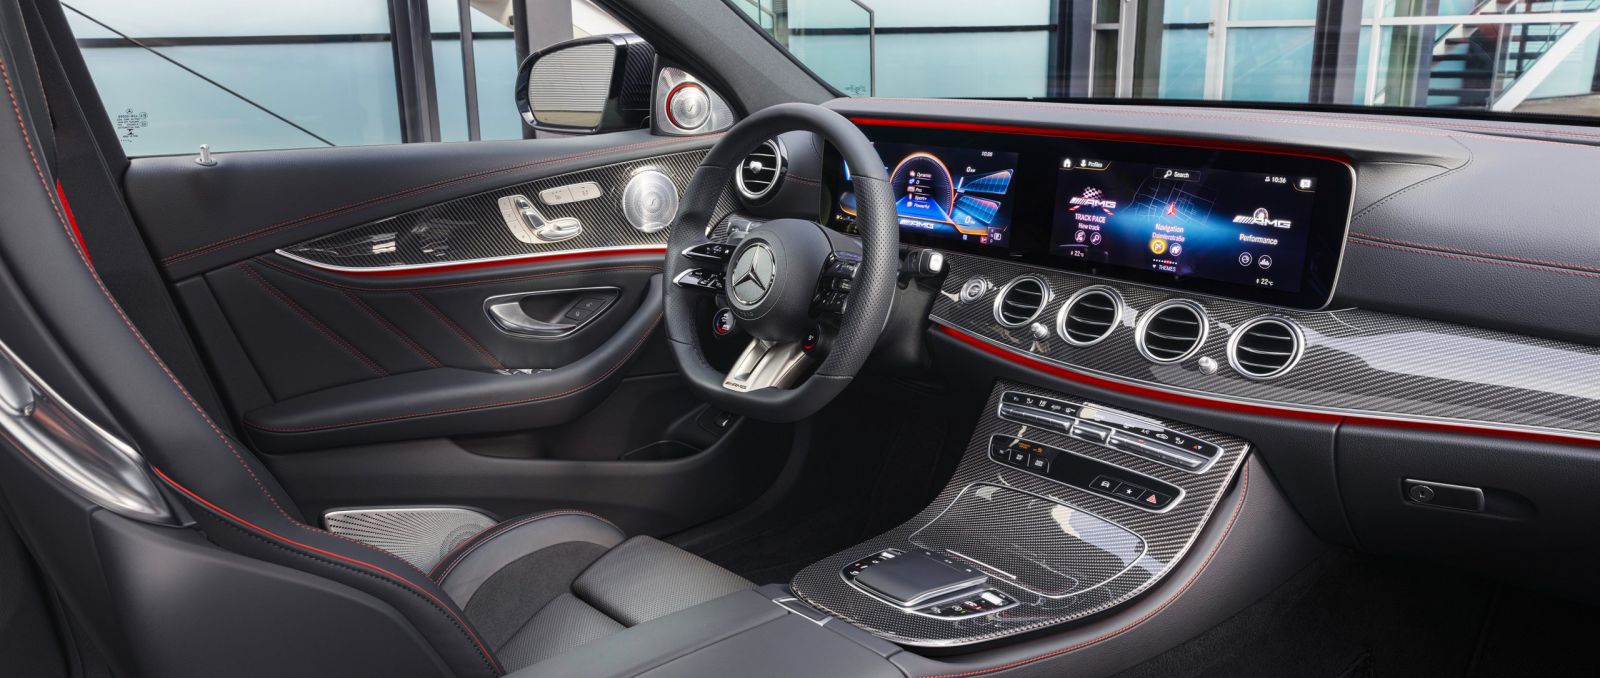 Xe Mercedes E-Class Đời Mới 2020 Ra Mắt Giá Bao Nhiêu Tiền, CÓ Bao nhiêu phiên bản, E200, E250, E300 Nhập khẩu hay lắp ráp, E-Class có gì mới, E53 AMG màu xám